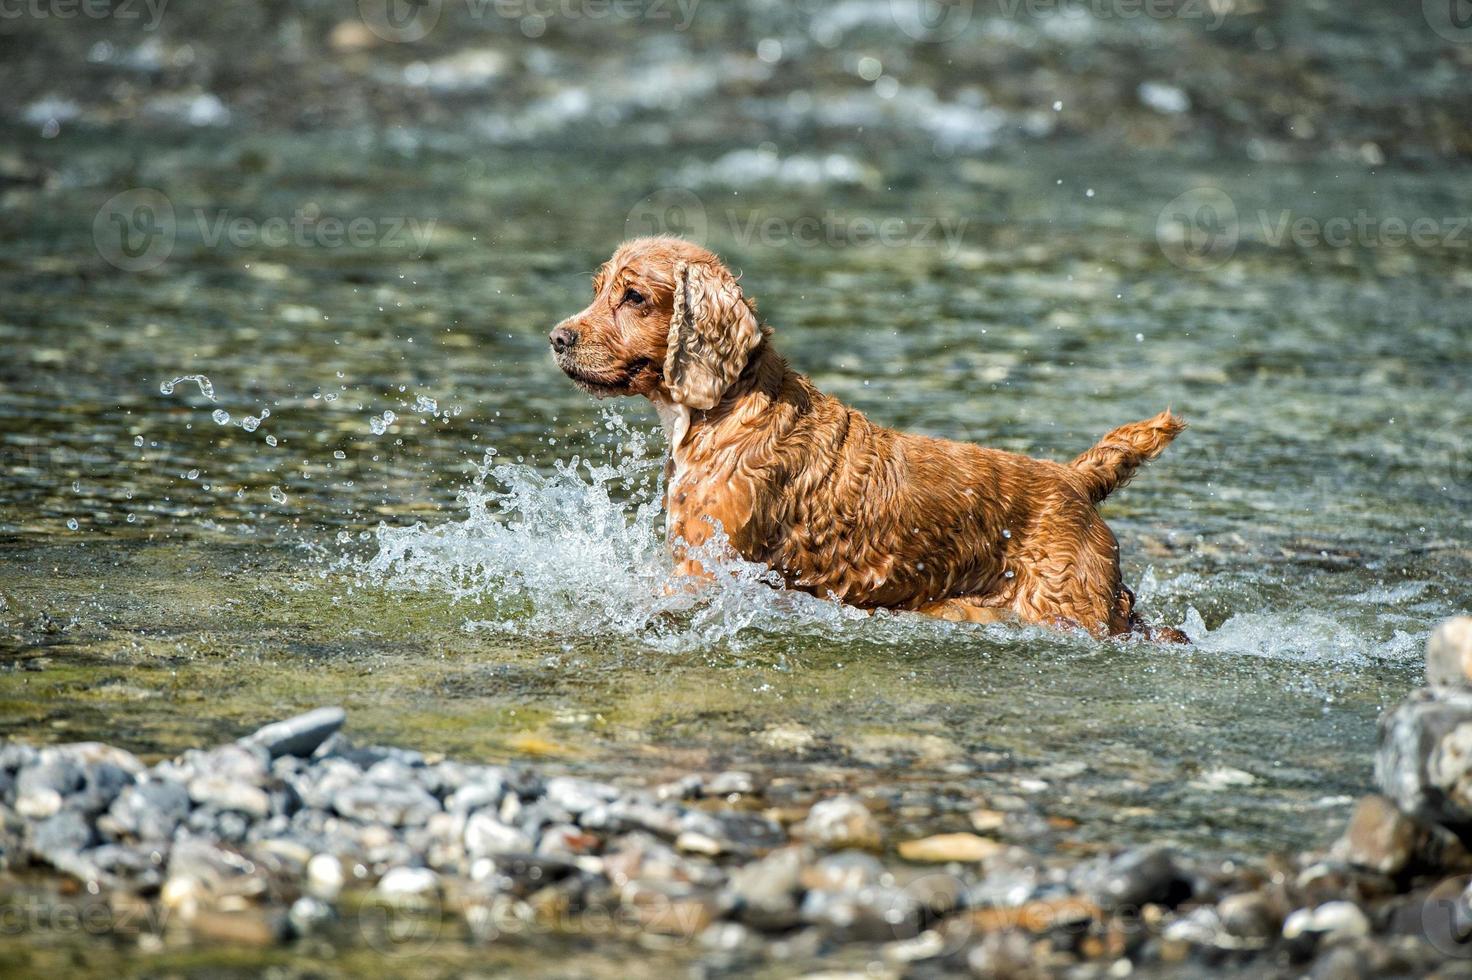 valp ung hund engelsk cockerspaniel spaniel medan löpning i de vatten foto